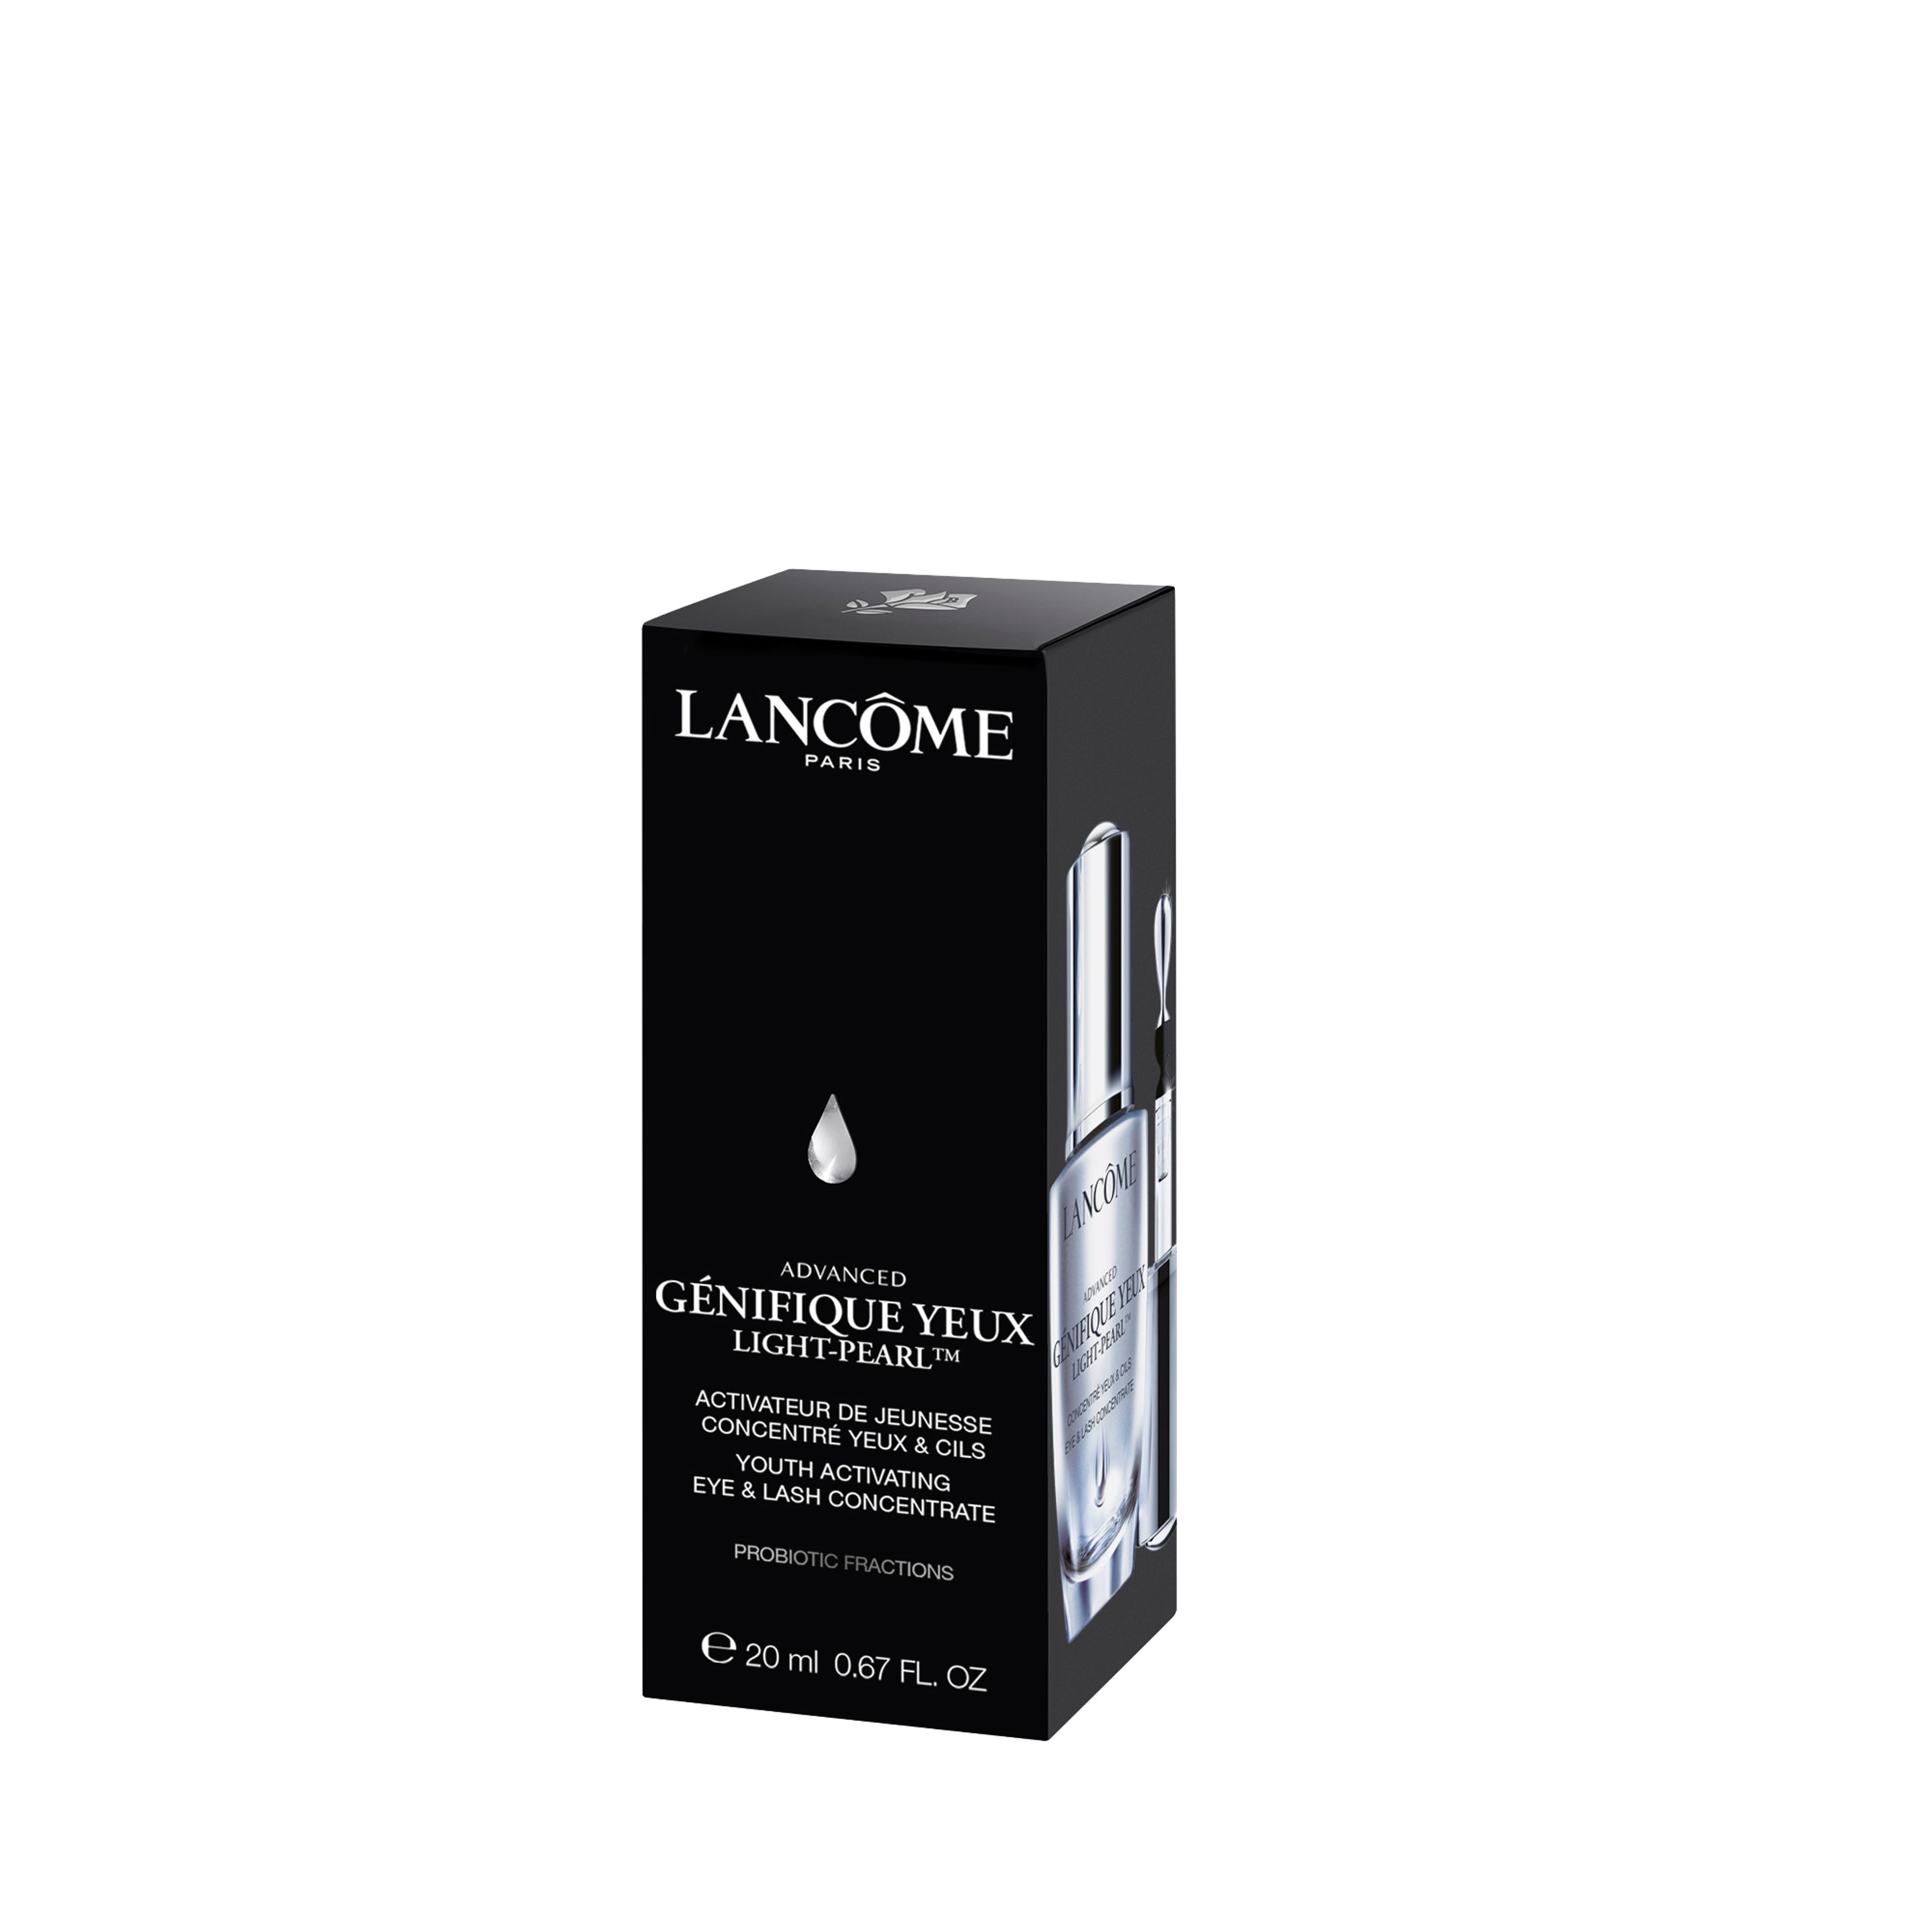 Lancôme Advanced Génifique Light-pearl™ Siero 9